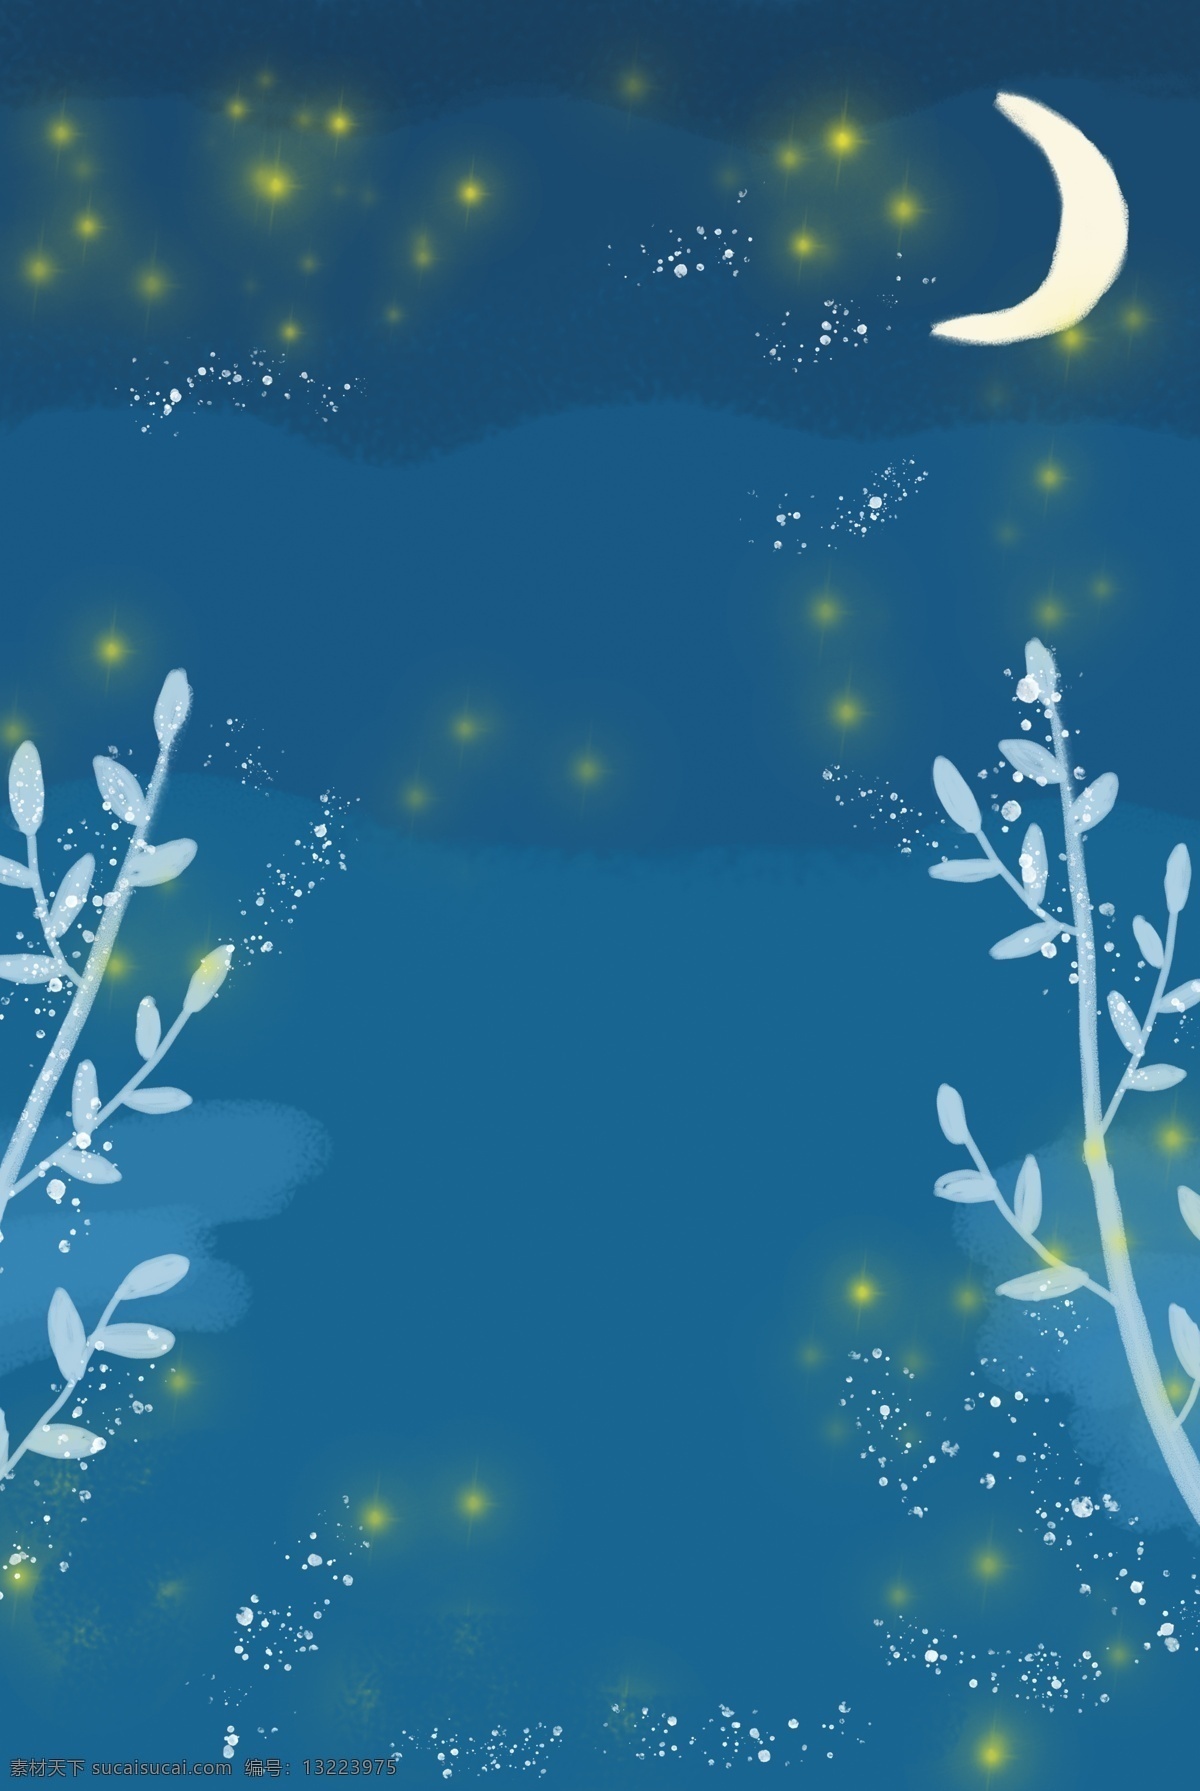 水彩 蓝色 荧光 月 空 背景 卡通 树枝 枝叶 月亮 夜空